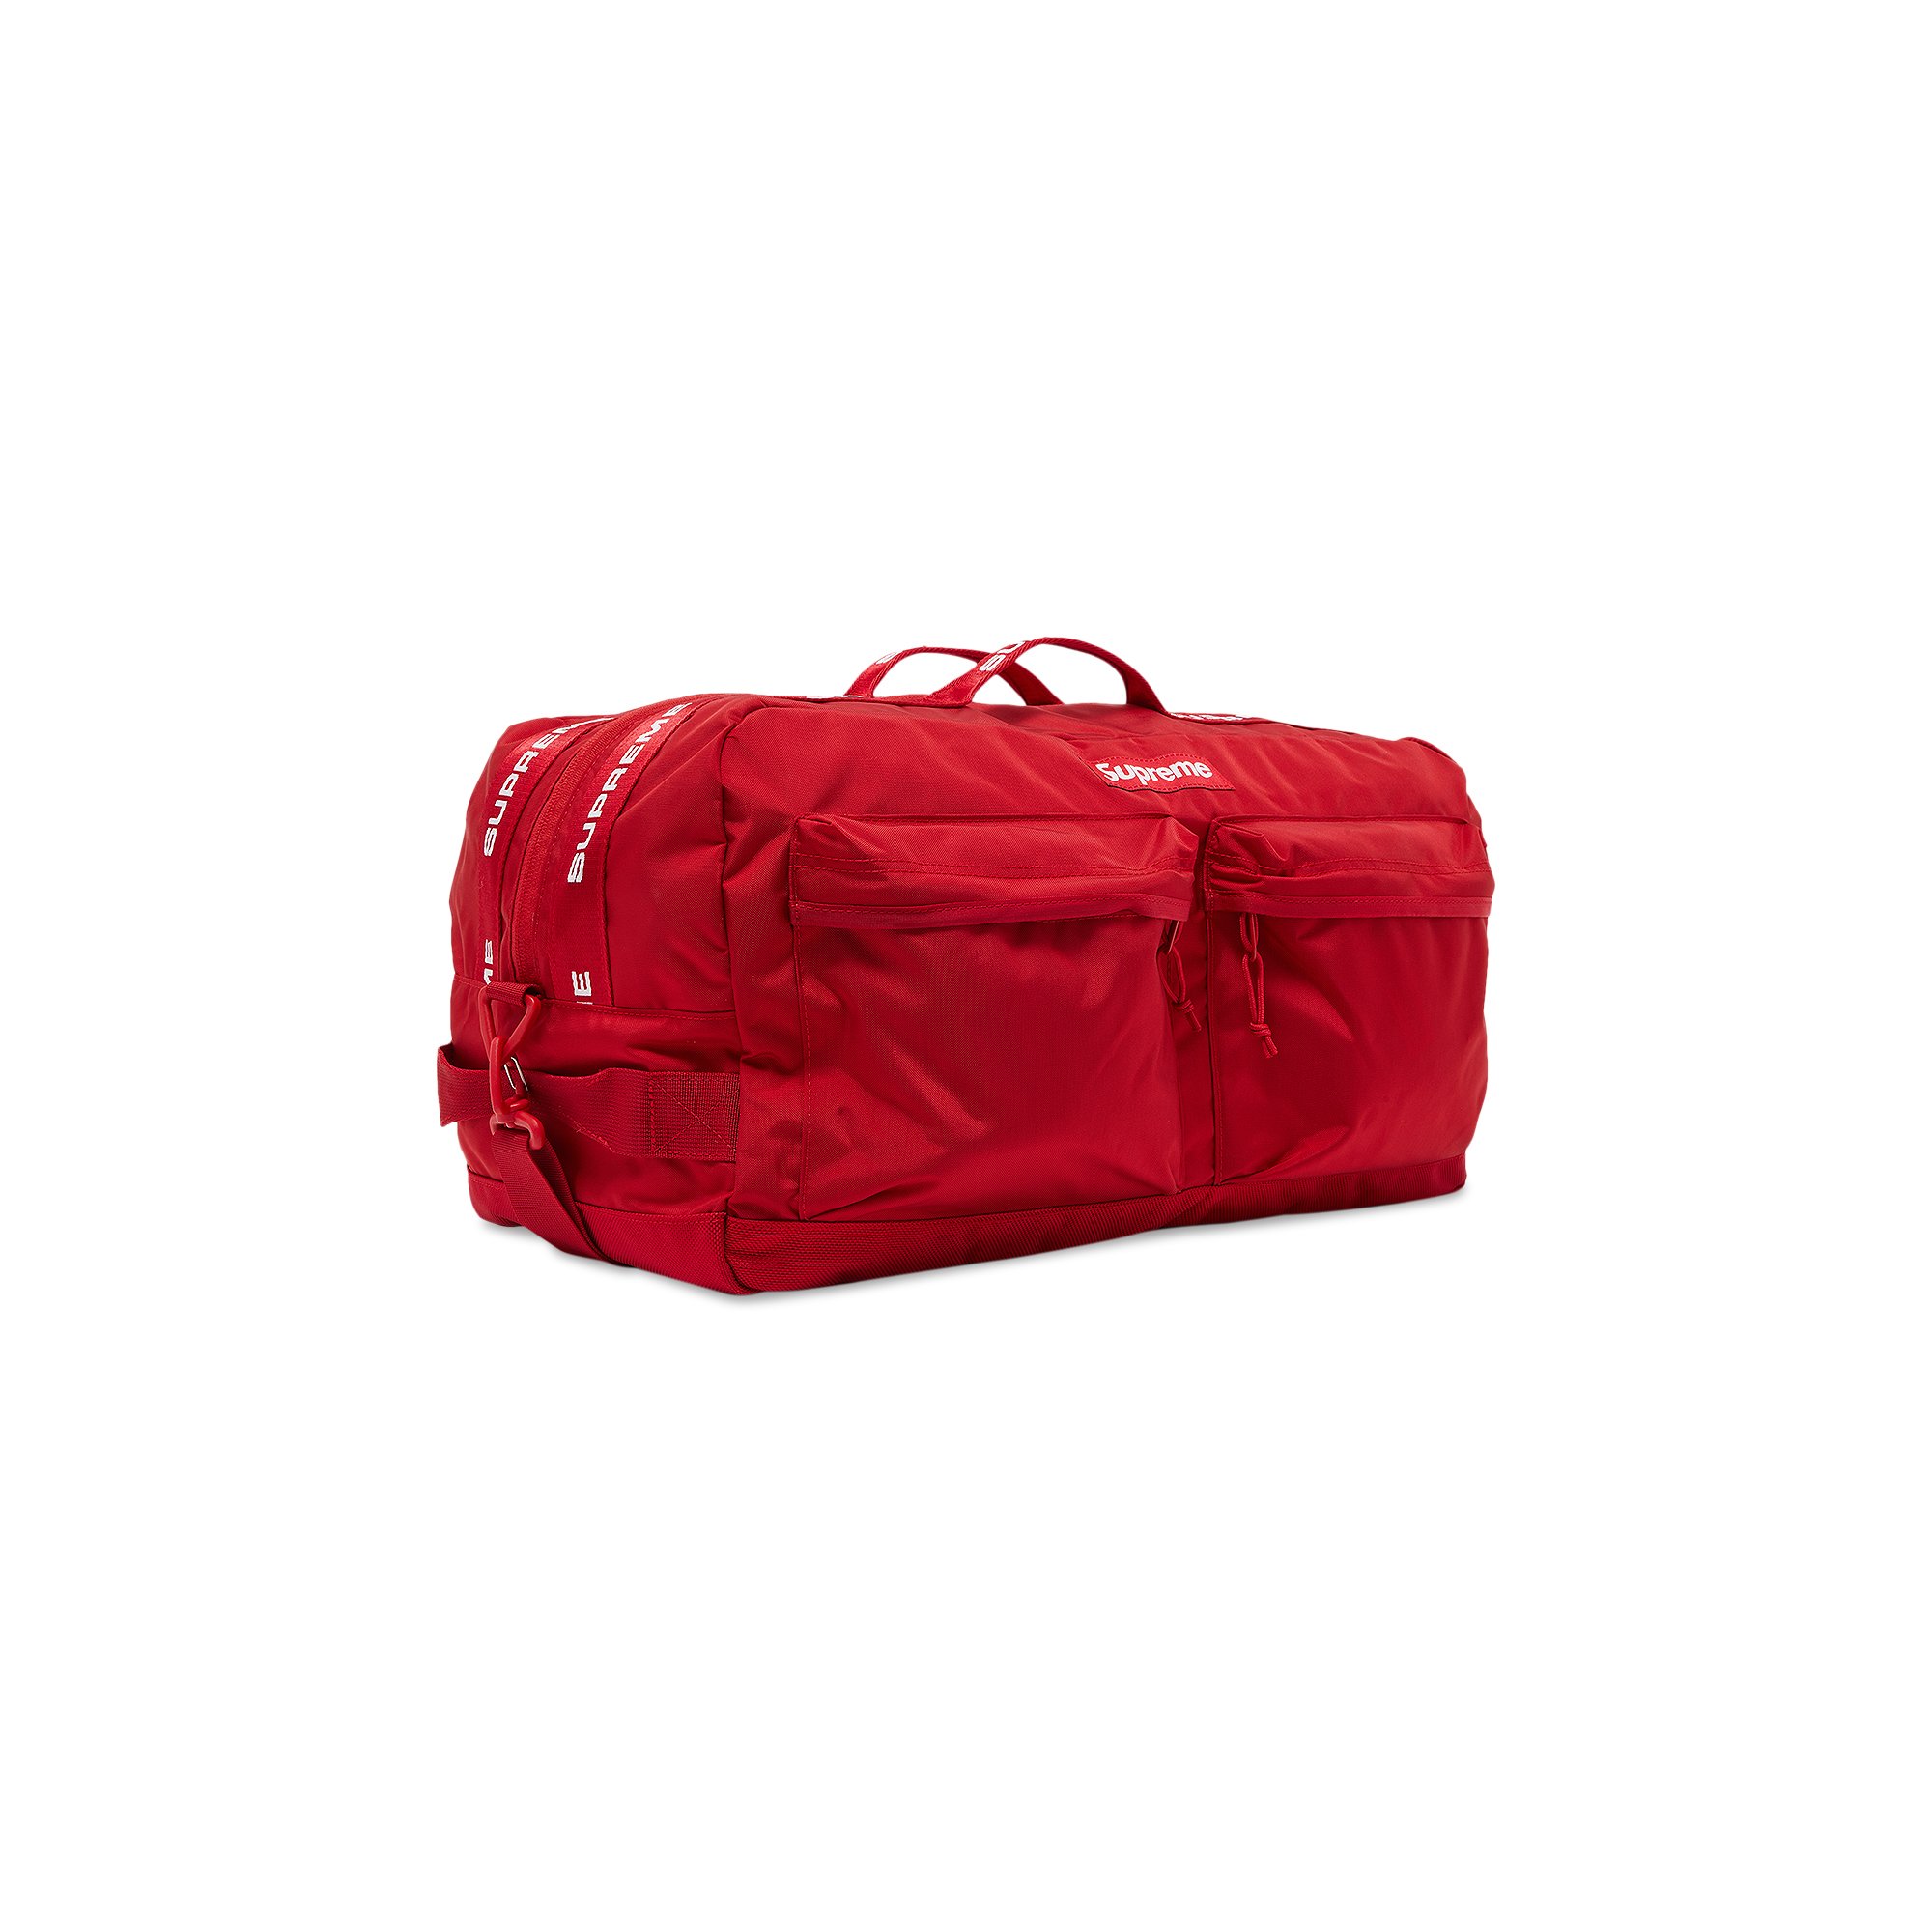 【新品】Supreme Duffle Bag/Red